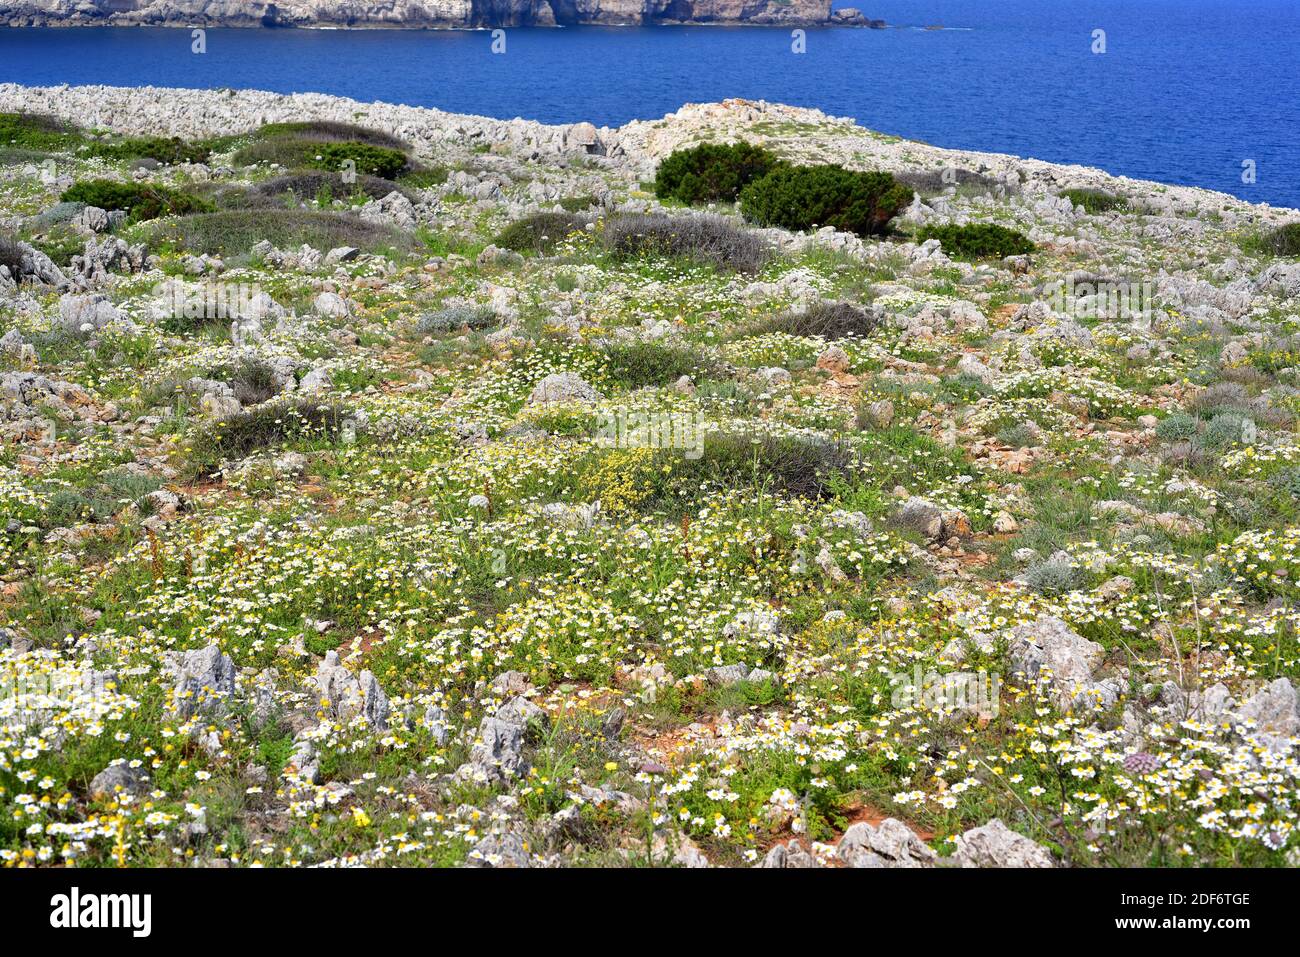 La camomille côtière (Anthemis maritima) est une plante vivace indigène à l'ouest du bassin méditerranéen. Cette photo a été prise à Cala Morell, Minorque, Banque D'Images